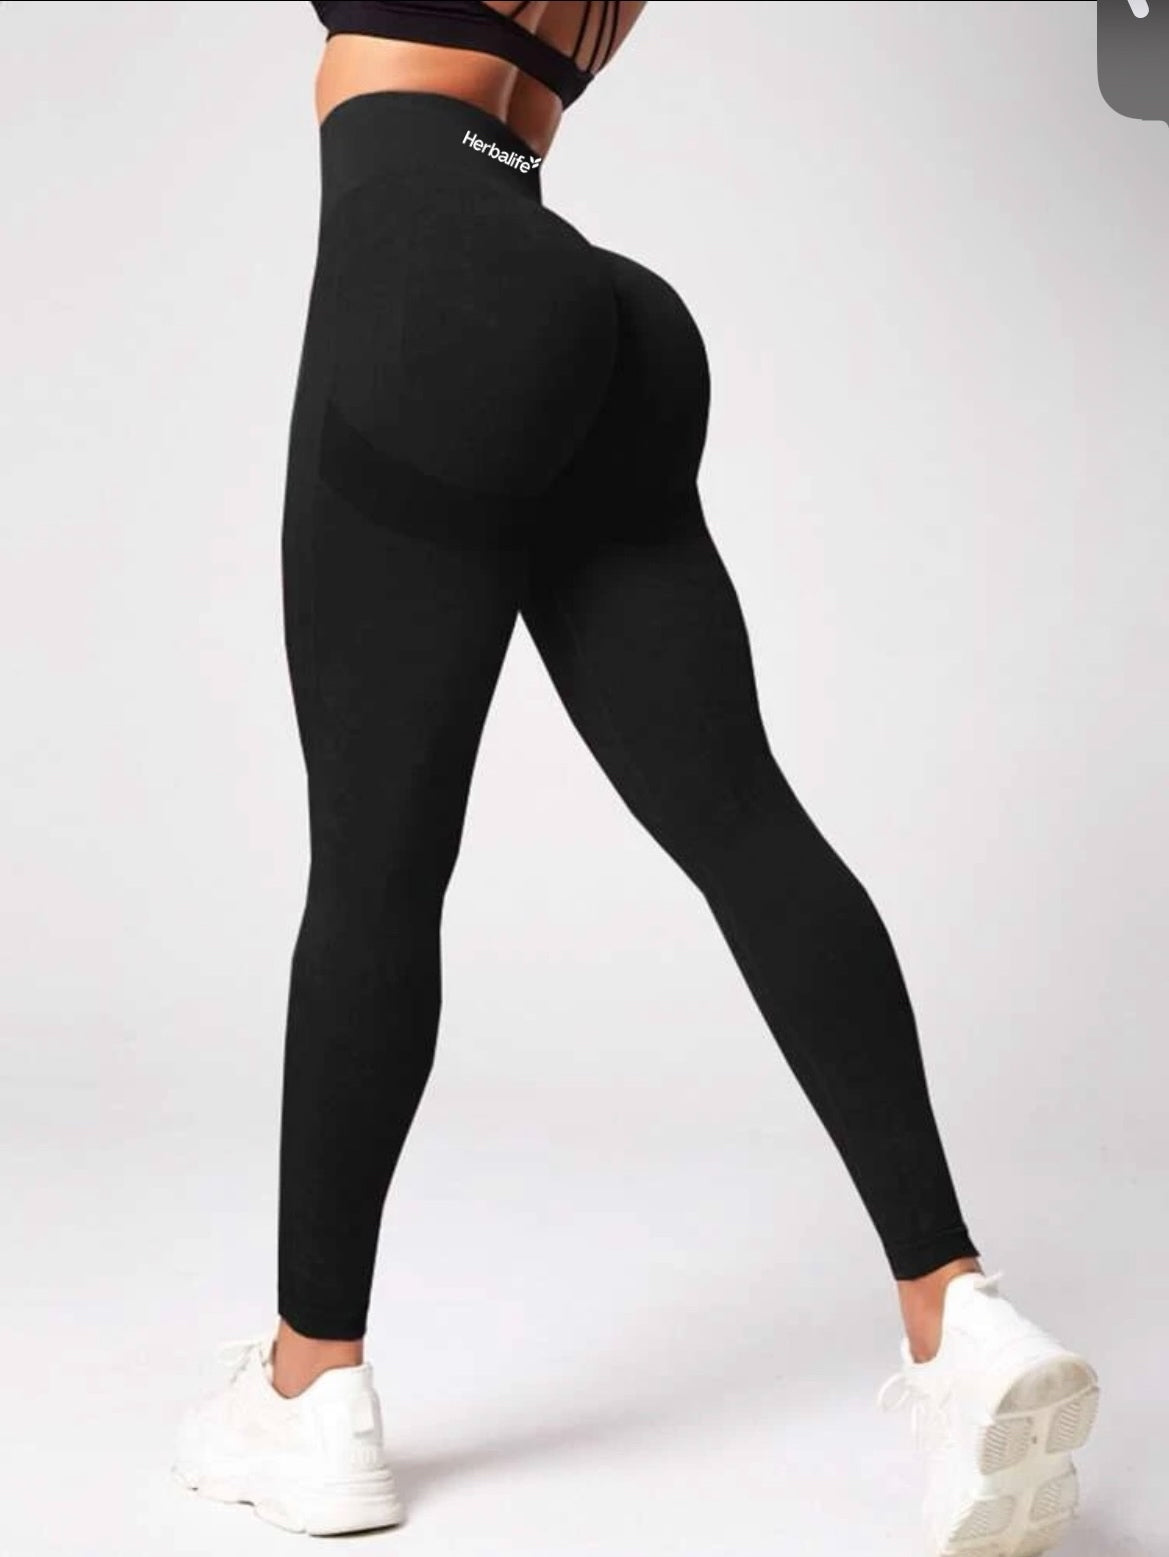 Yoga Tights Seamless High Stretch Tummy Control Gym Leggings Black